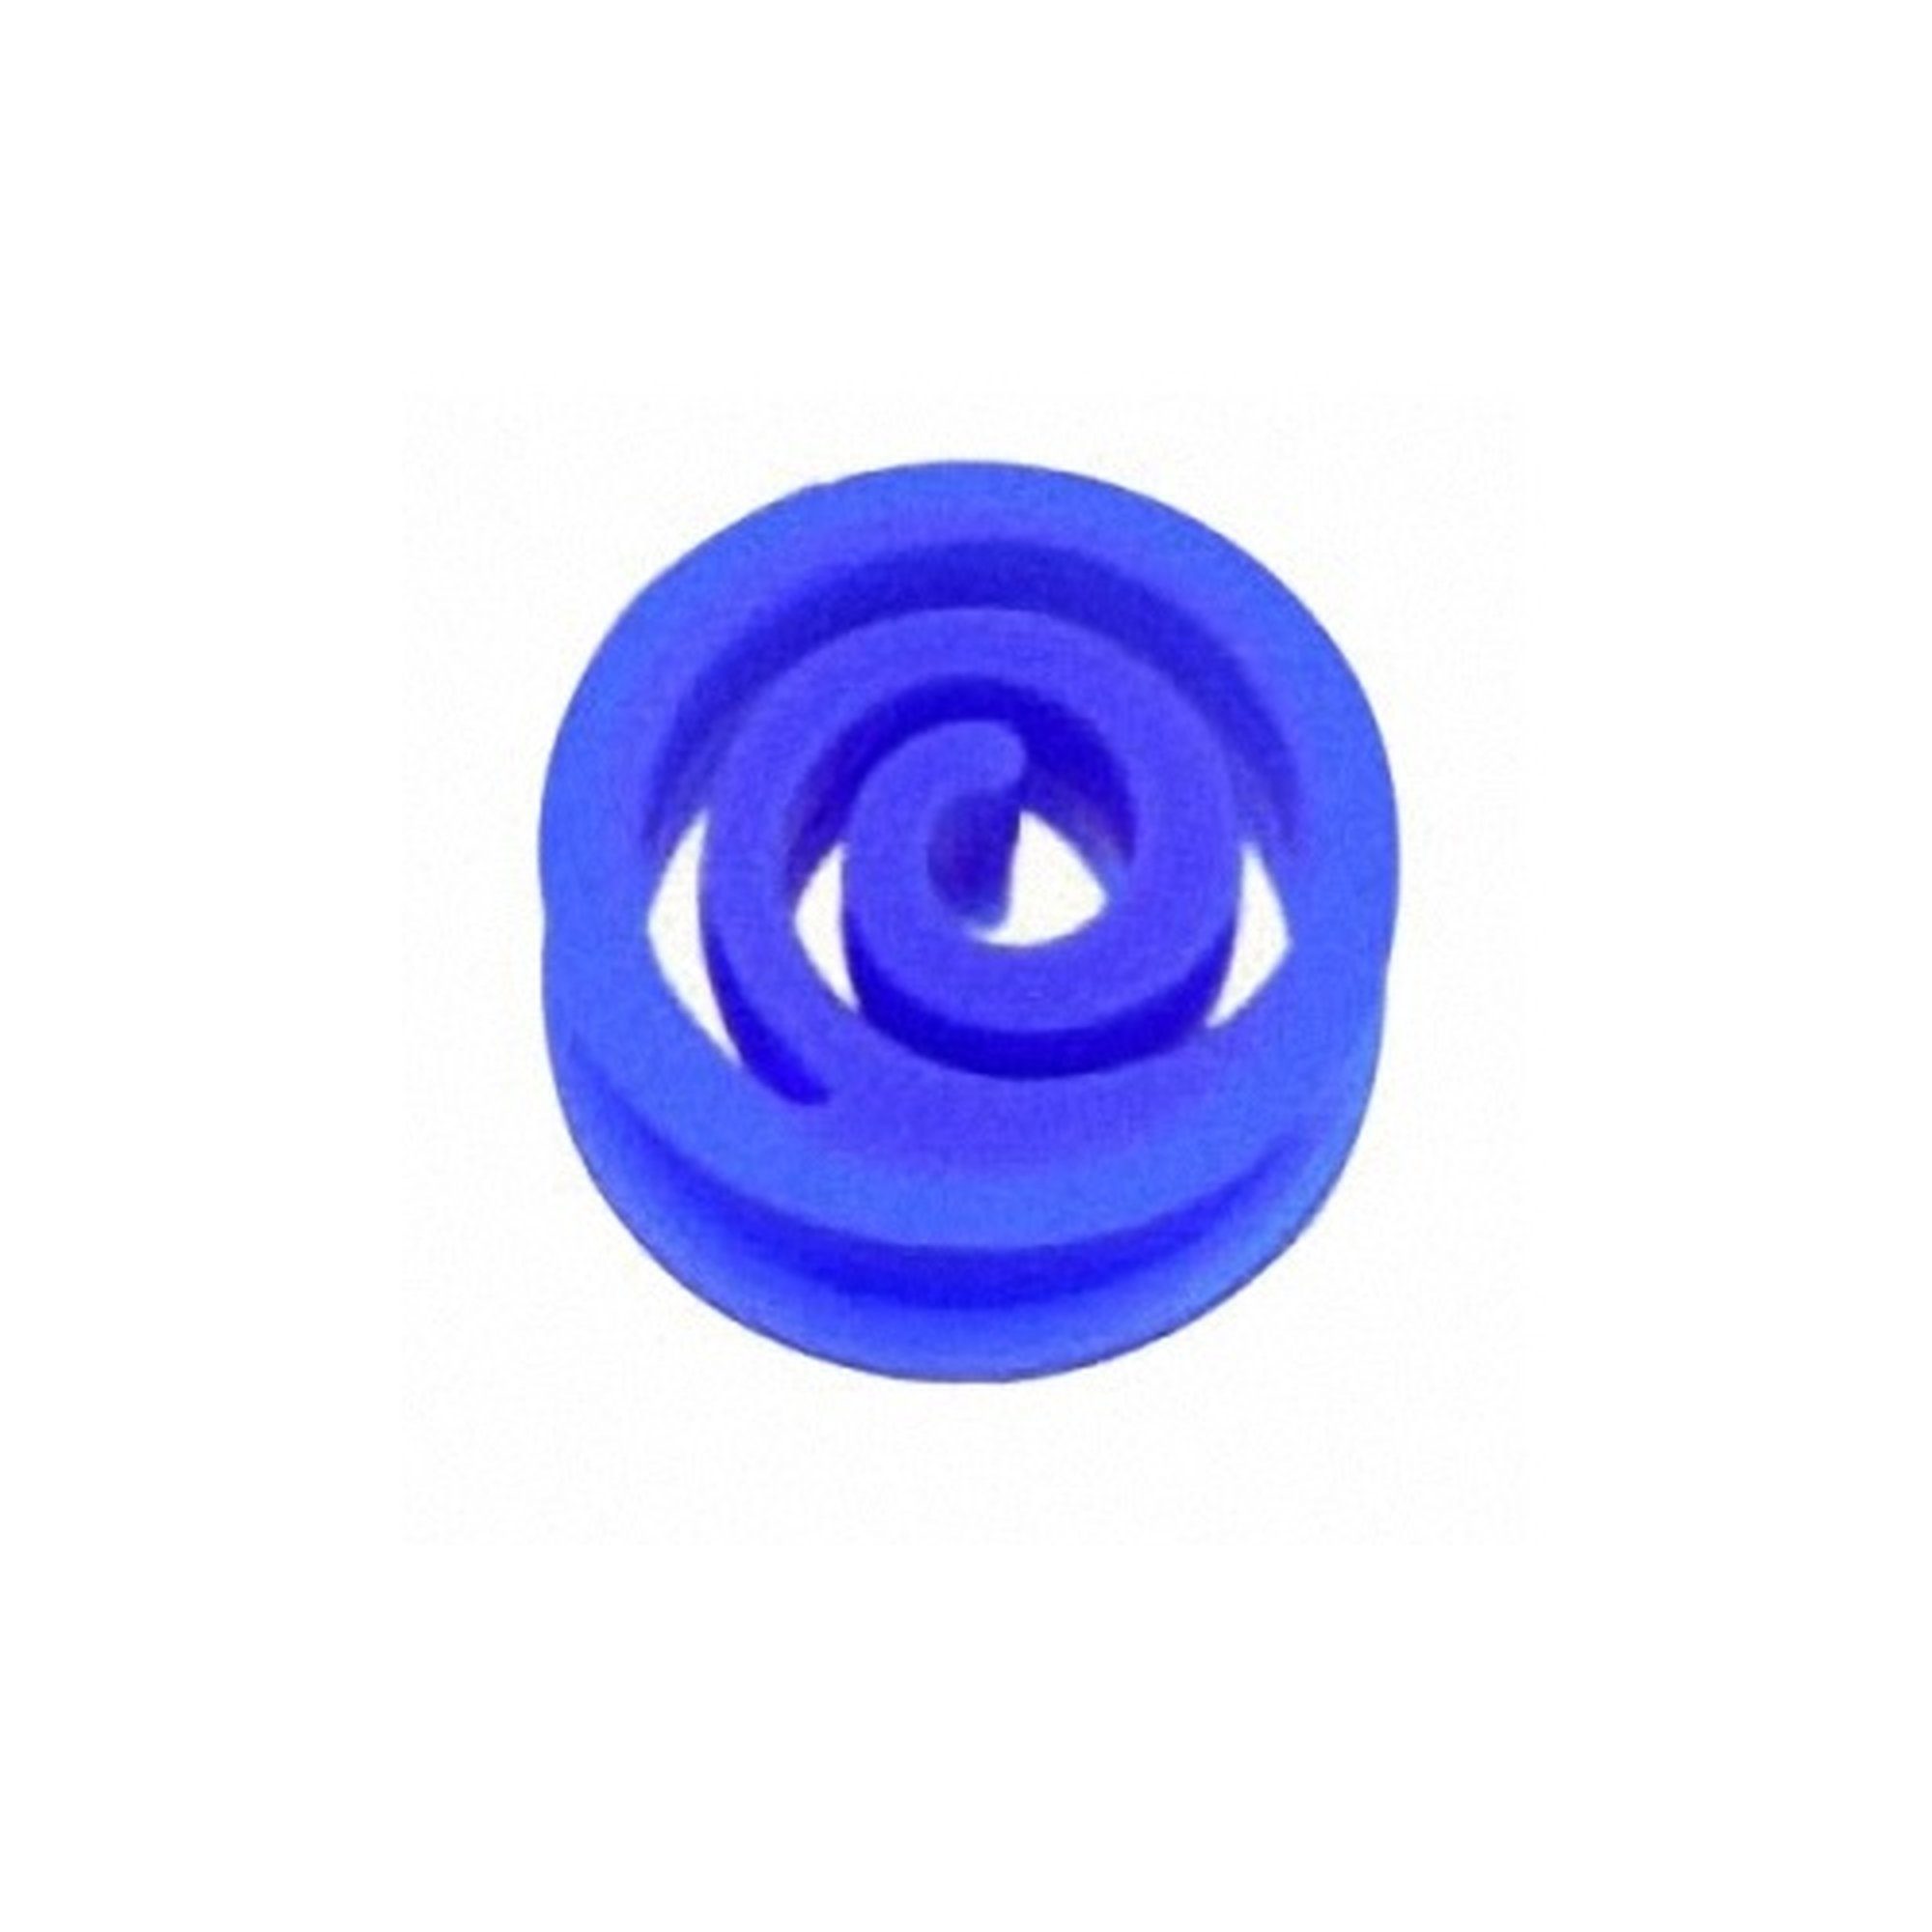 Taffstyle Plug Ohr Plug Flesh Tunnel Ohrpiercing Silikon Spirale, Ohr Plug Flesh Tunnel Piercing Ohrpiercing Silikon Spirale Blau